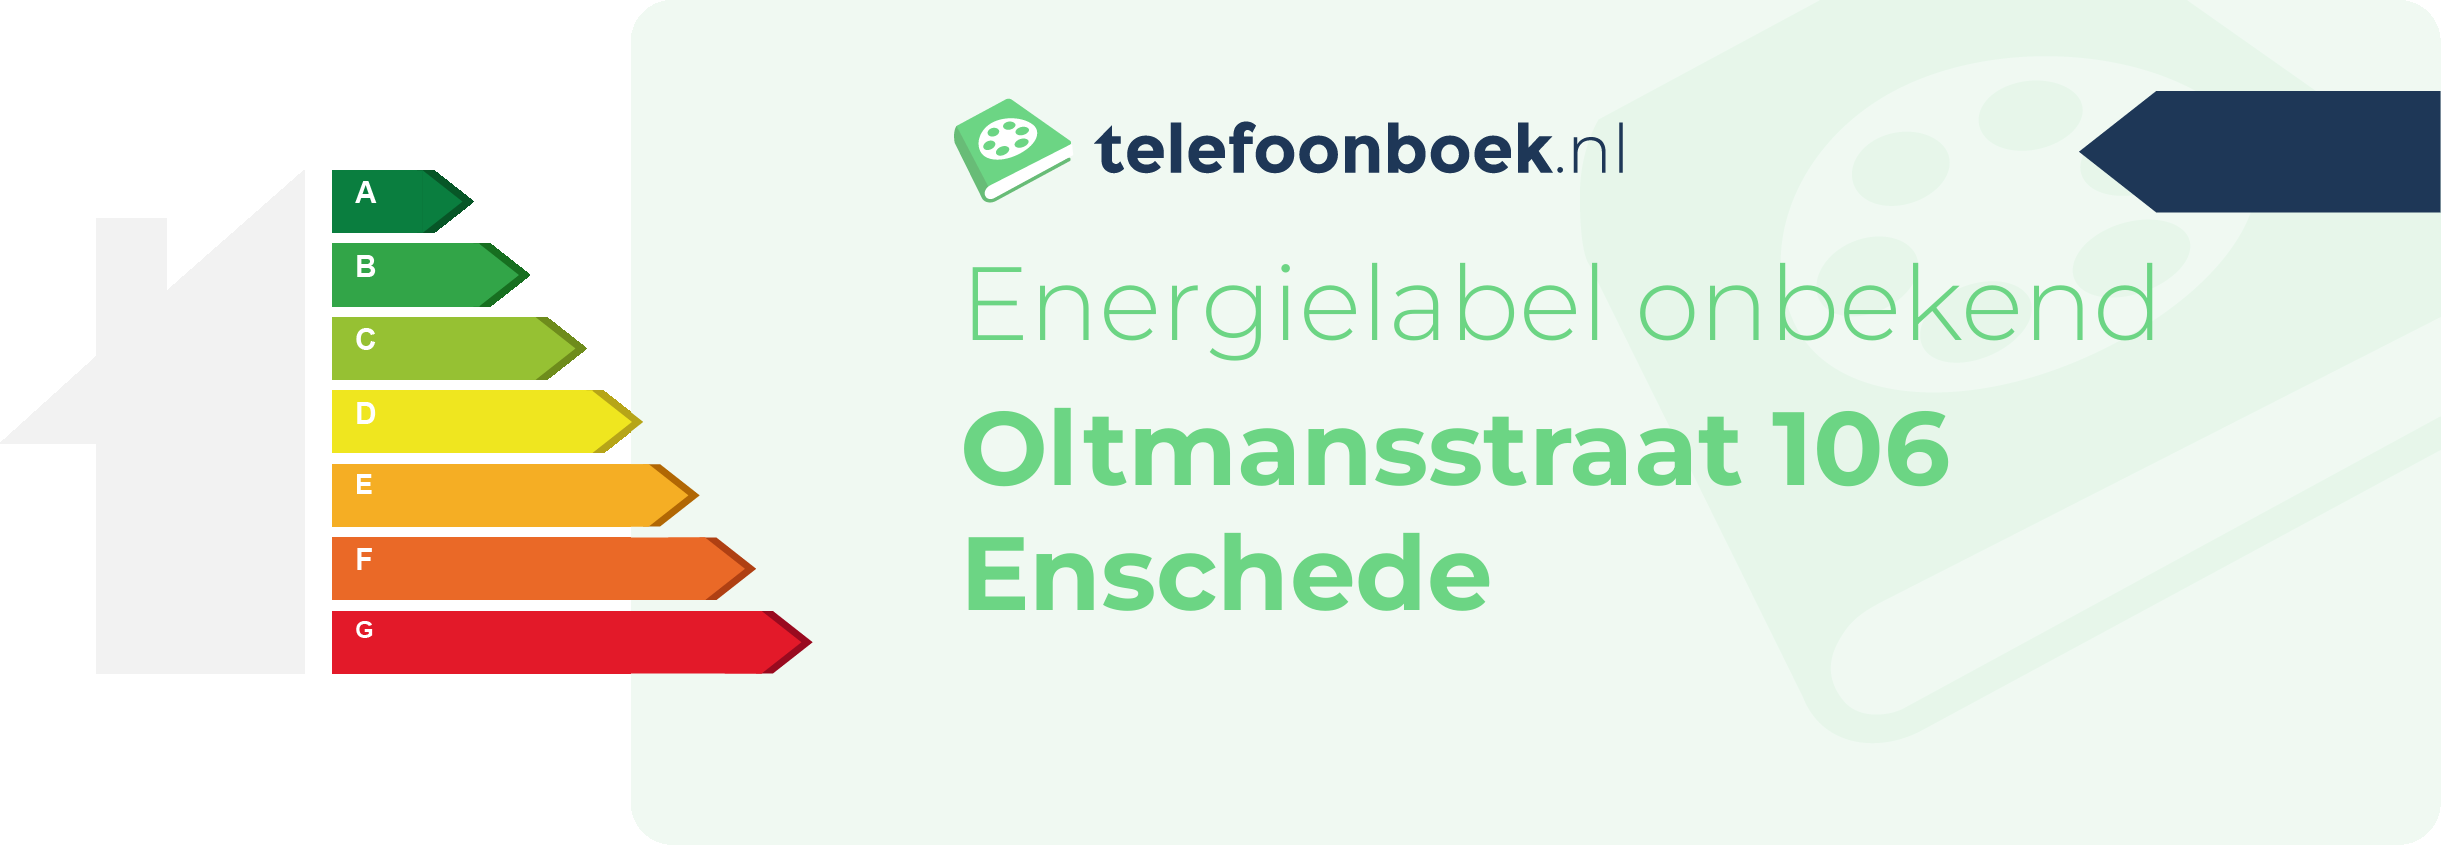 Energielabel Oltmansstraat 106 Enschede